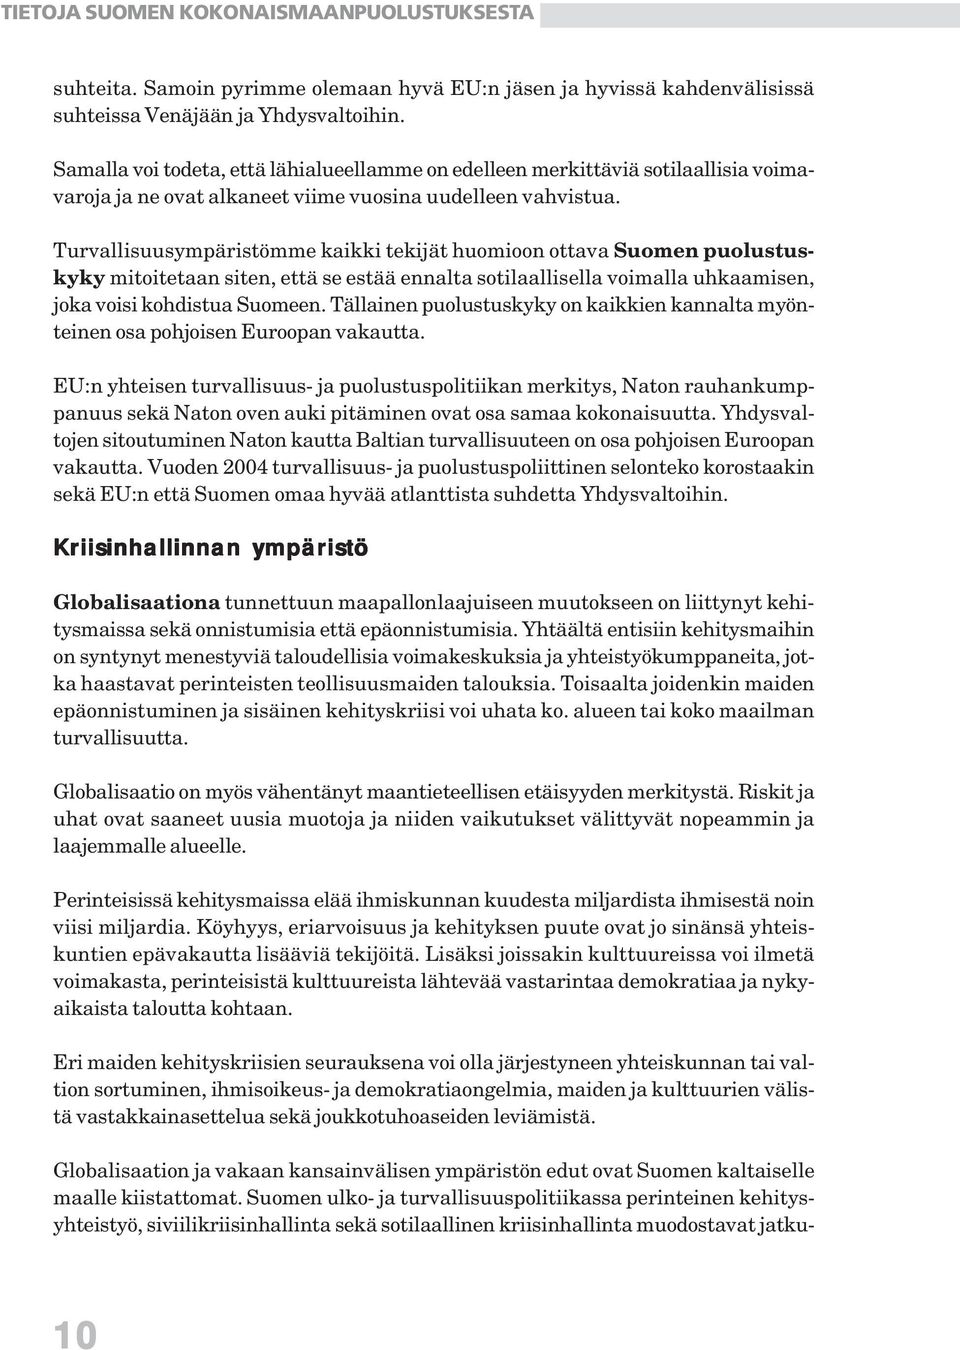 Turvallisuusympäristömme kaikki tekijät huomioon ottava Suomen puolustuskyky mitoitetaan siten, että se estää ennalta sotilaallisella voimalla uhkaamisen, joka voisi kohdistua Suomeen.